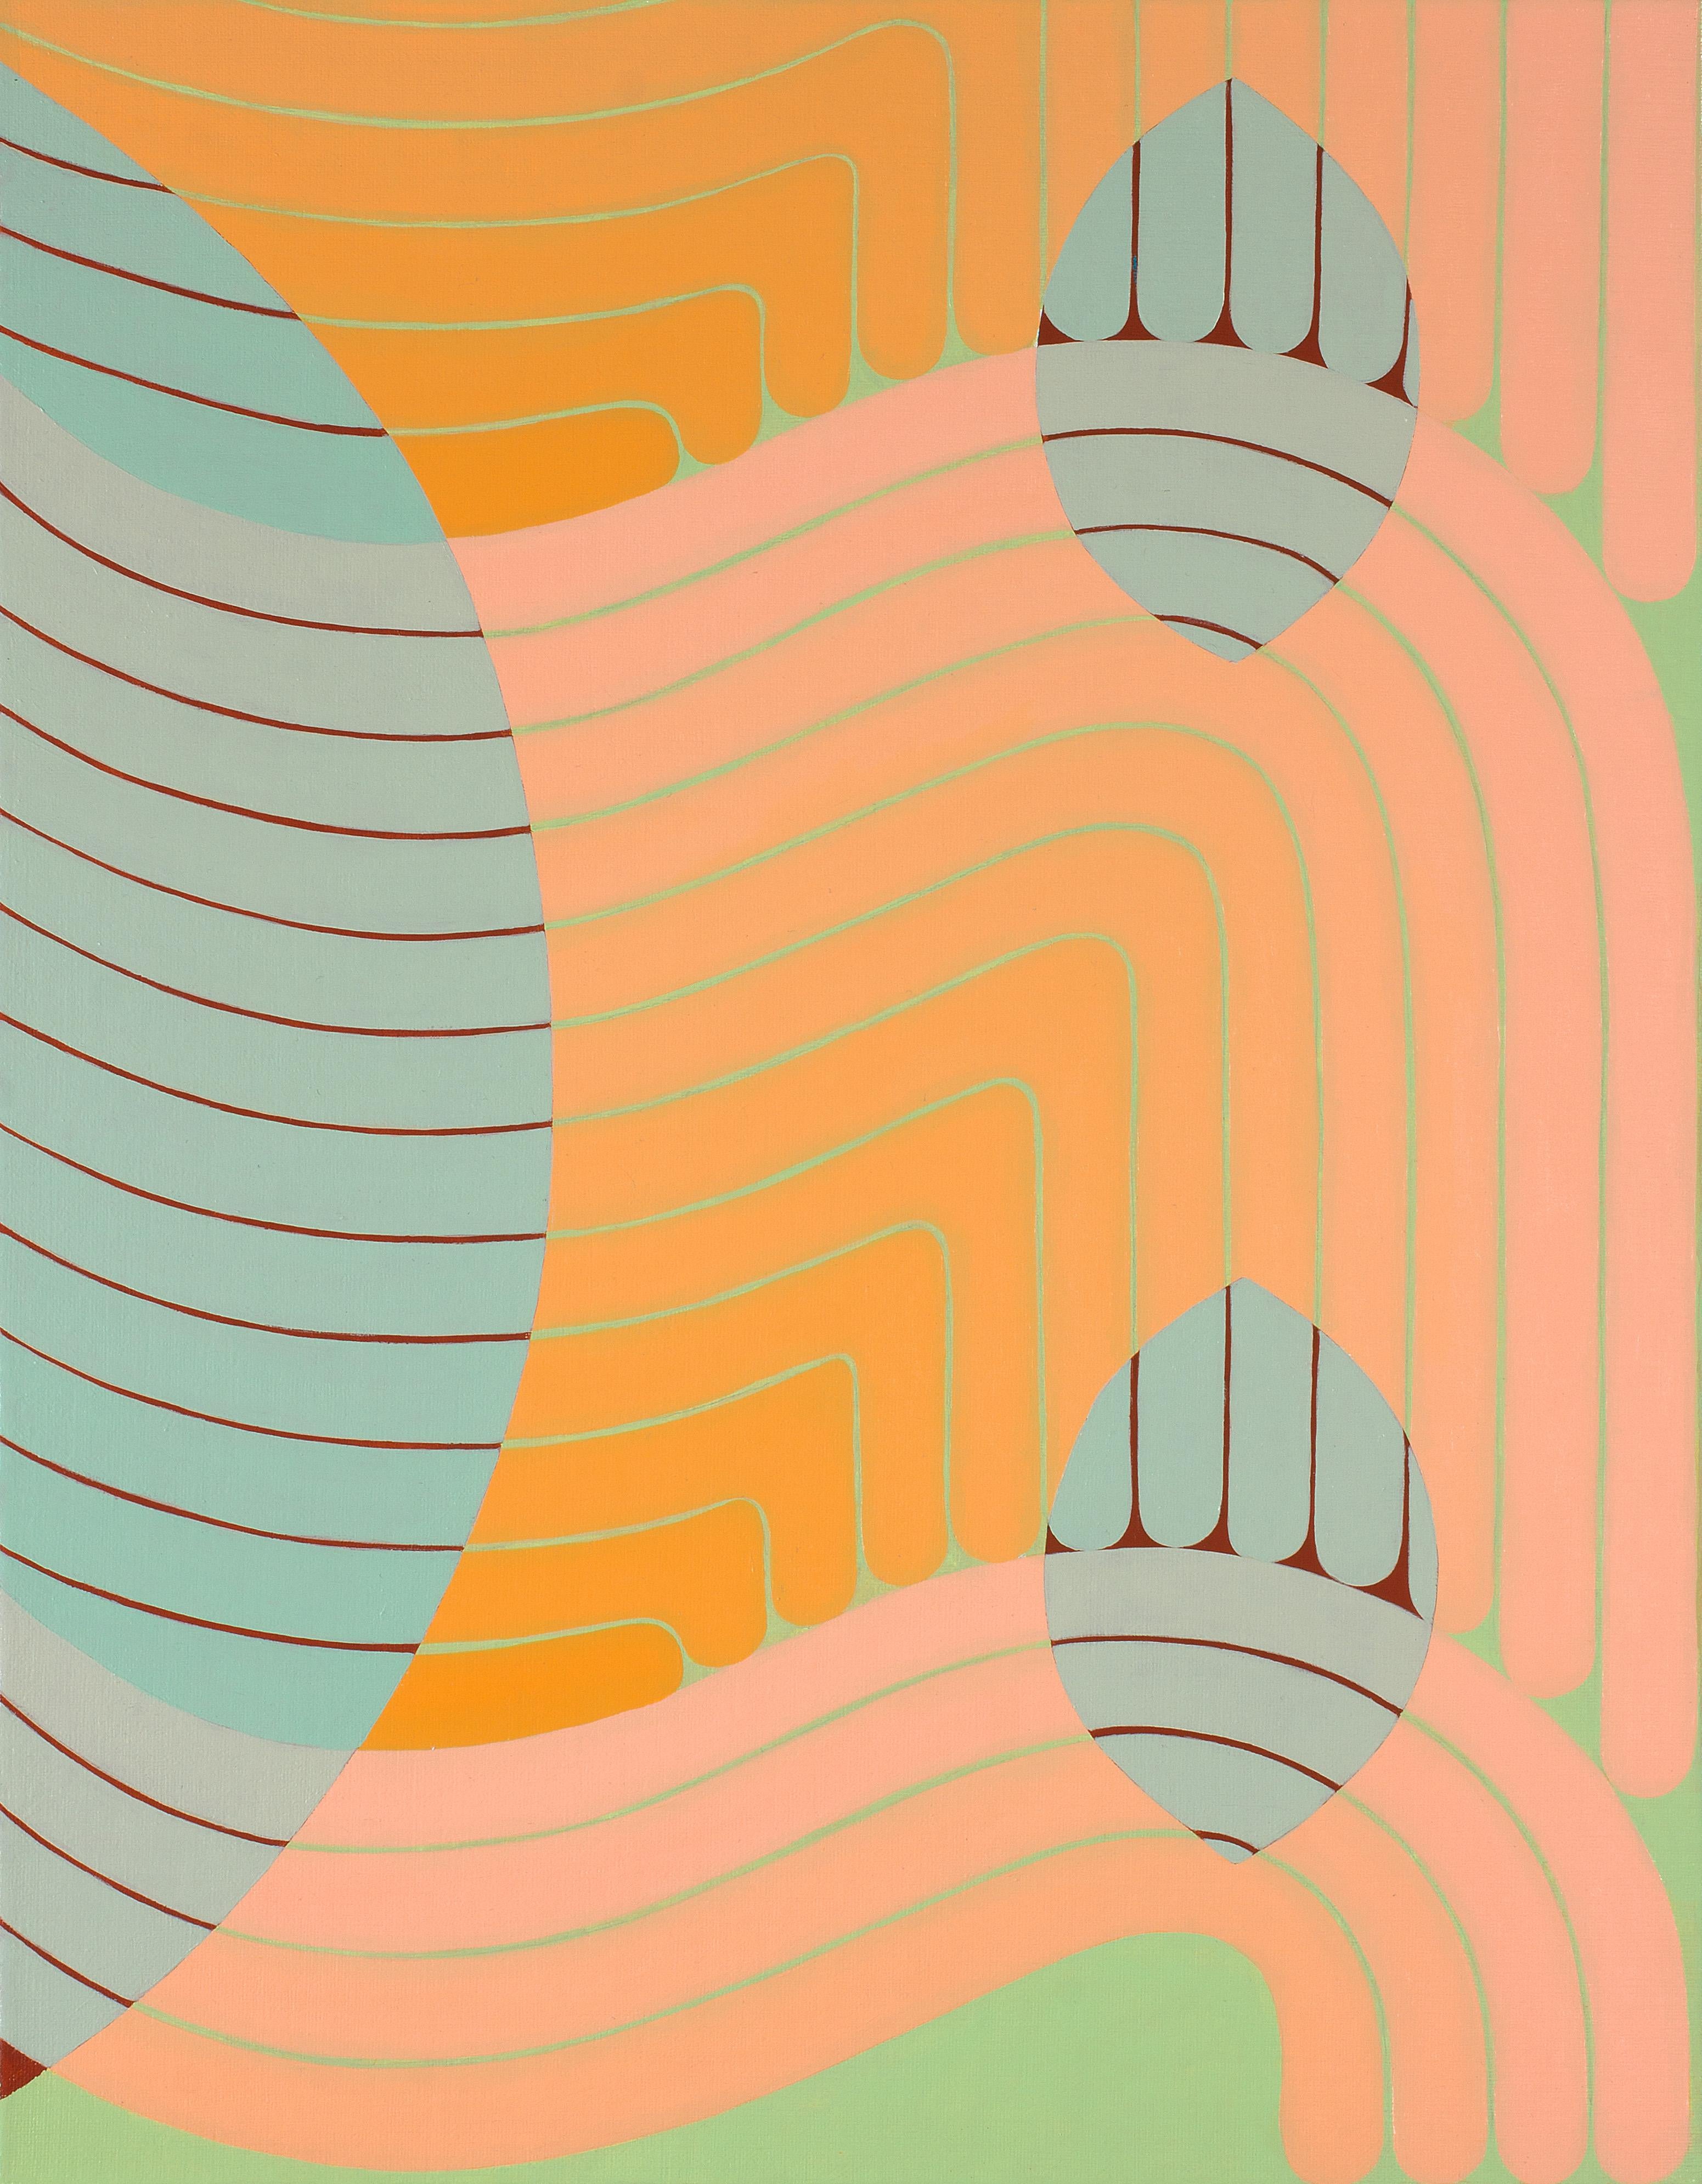 Abstract Painting Jenny Kemp - Tandem, pêche, bleu menthe, vert clair peinture abstraite géométrique, lignes courbes